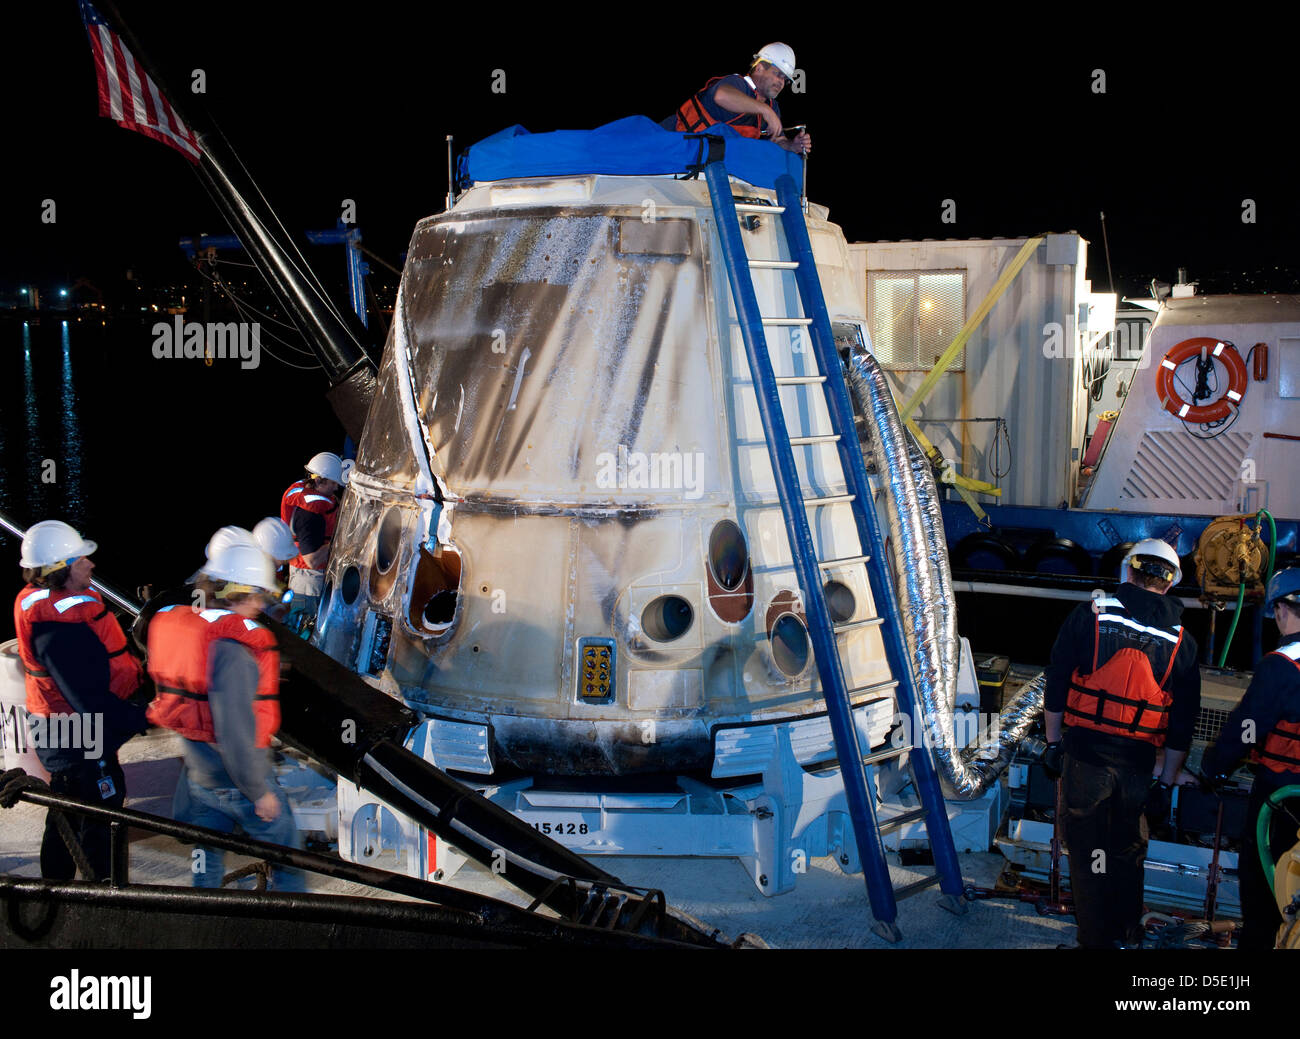 SpaceX Dragon la capsule est vu peu après son arrivée dans un port après la projection vers le bas de la Baja de Californie le 27 mars 2013 près de Los Angeles, Californie. Banque D'Images